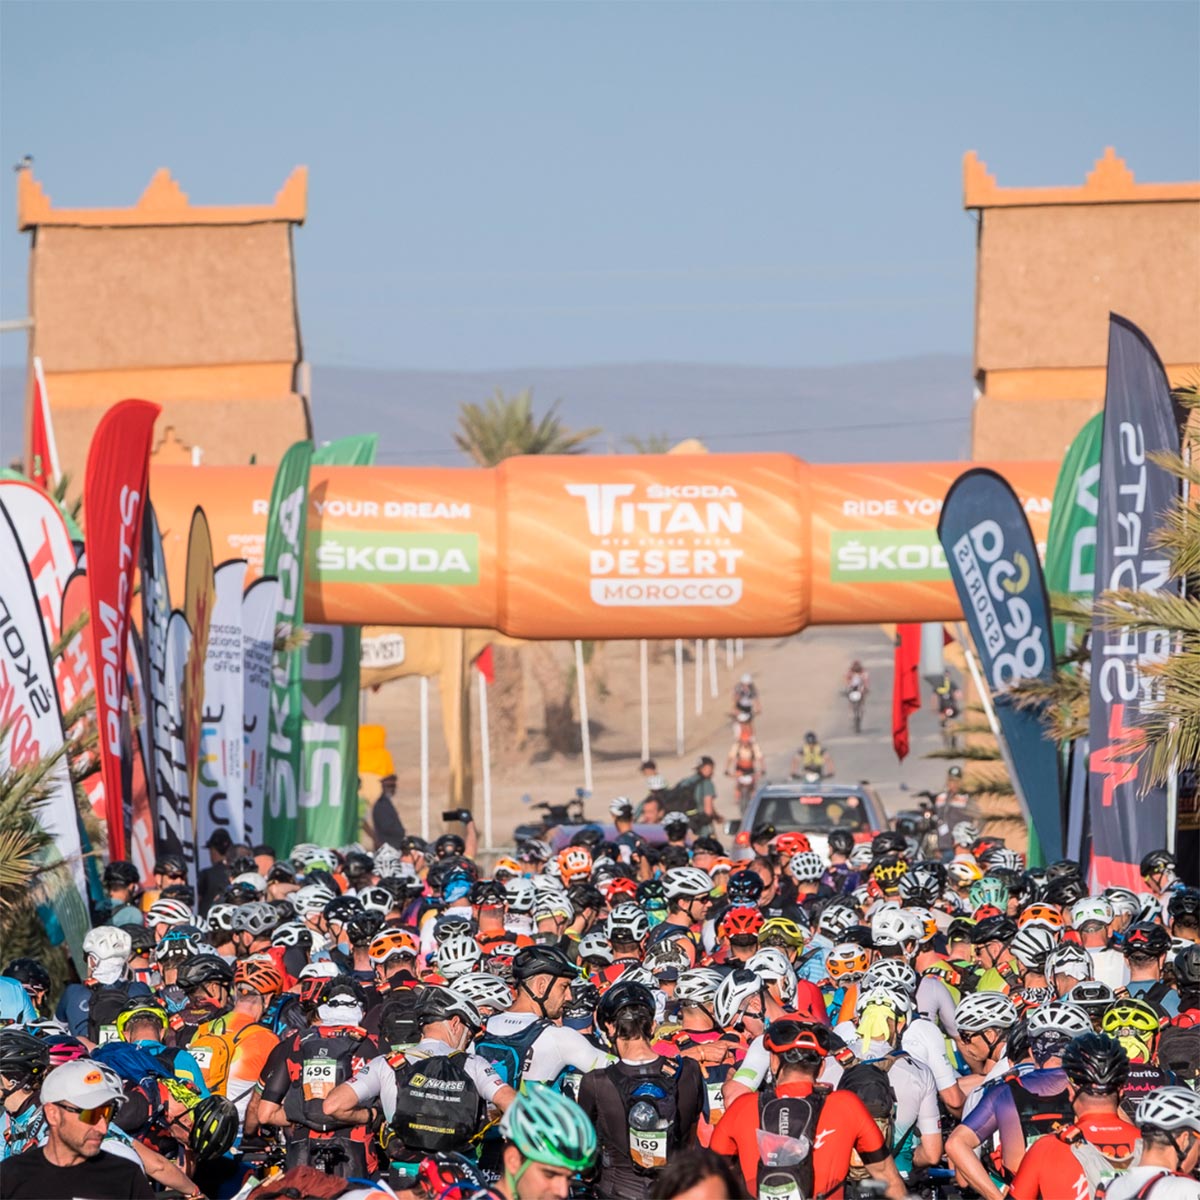 Escapa se convierte en patrocinador oficial de la Titan Desert Morocco y Titan Desert Almería